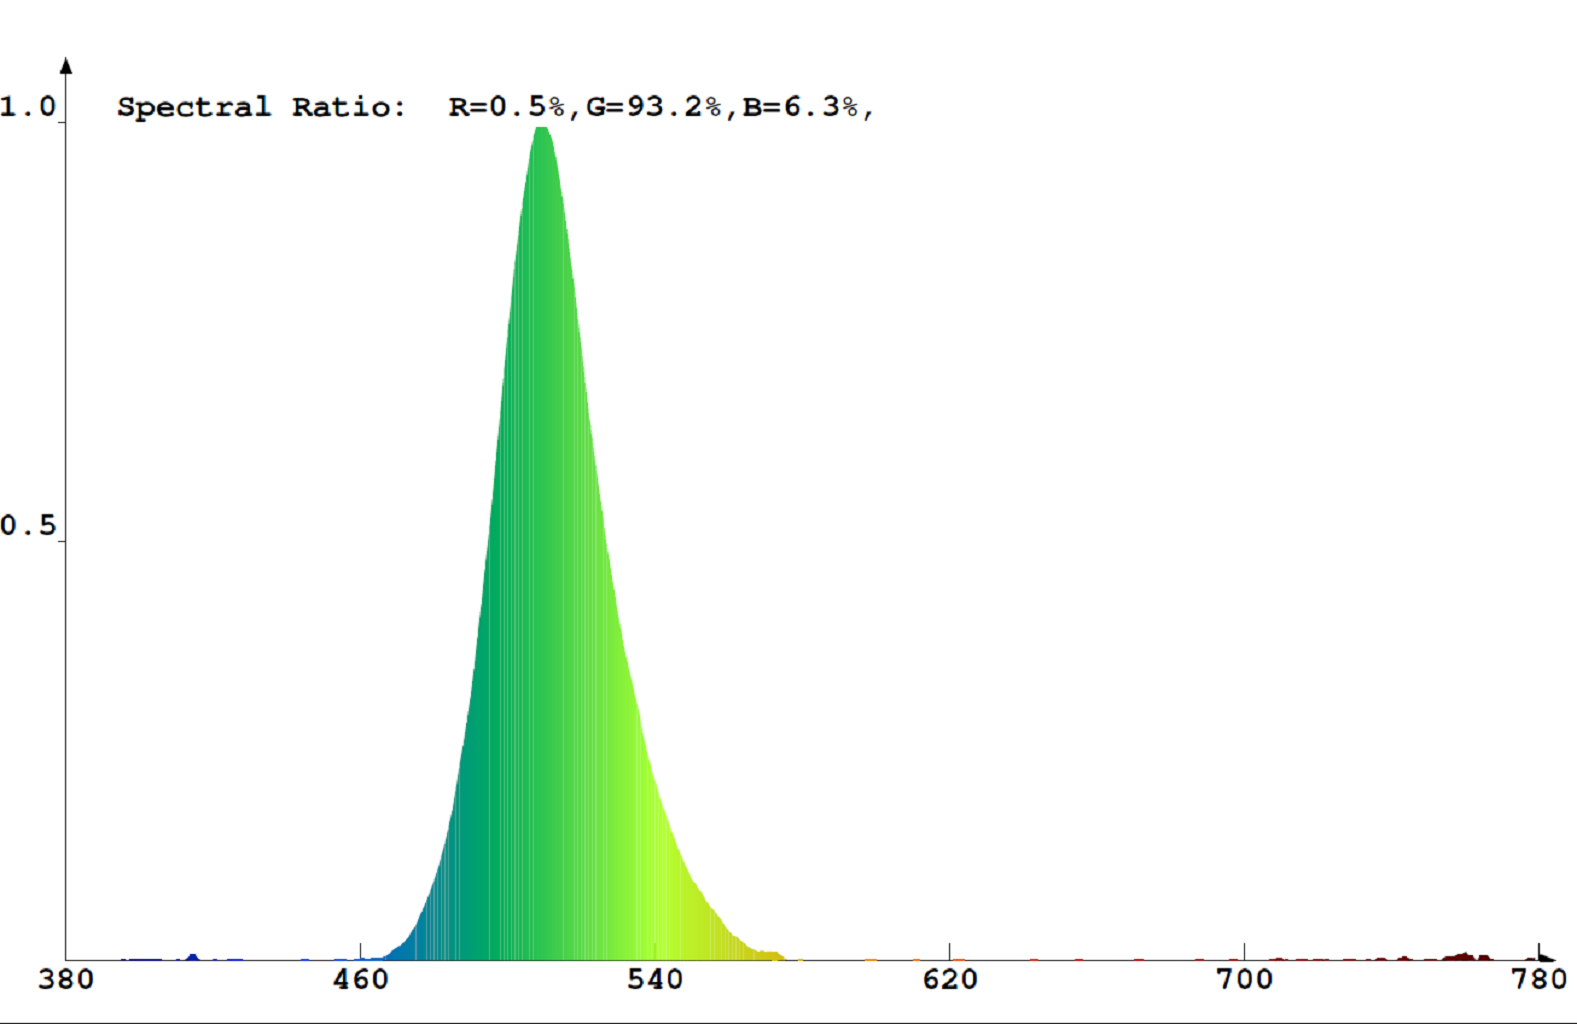 V-TAC 60 LED (3528SMD) beltéri 12V LED szalag 1m, zöld (KIVITELEZŐKNEK) spektrumképe